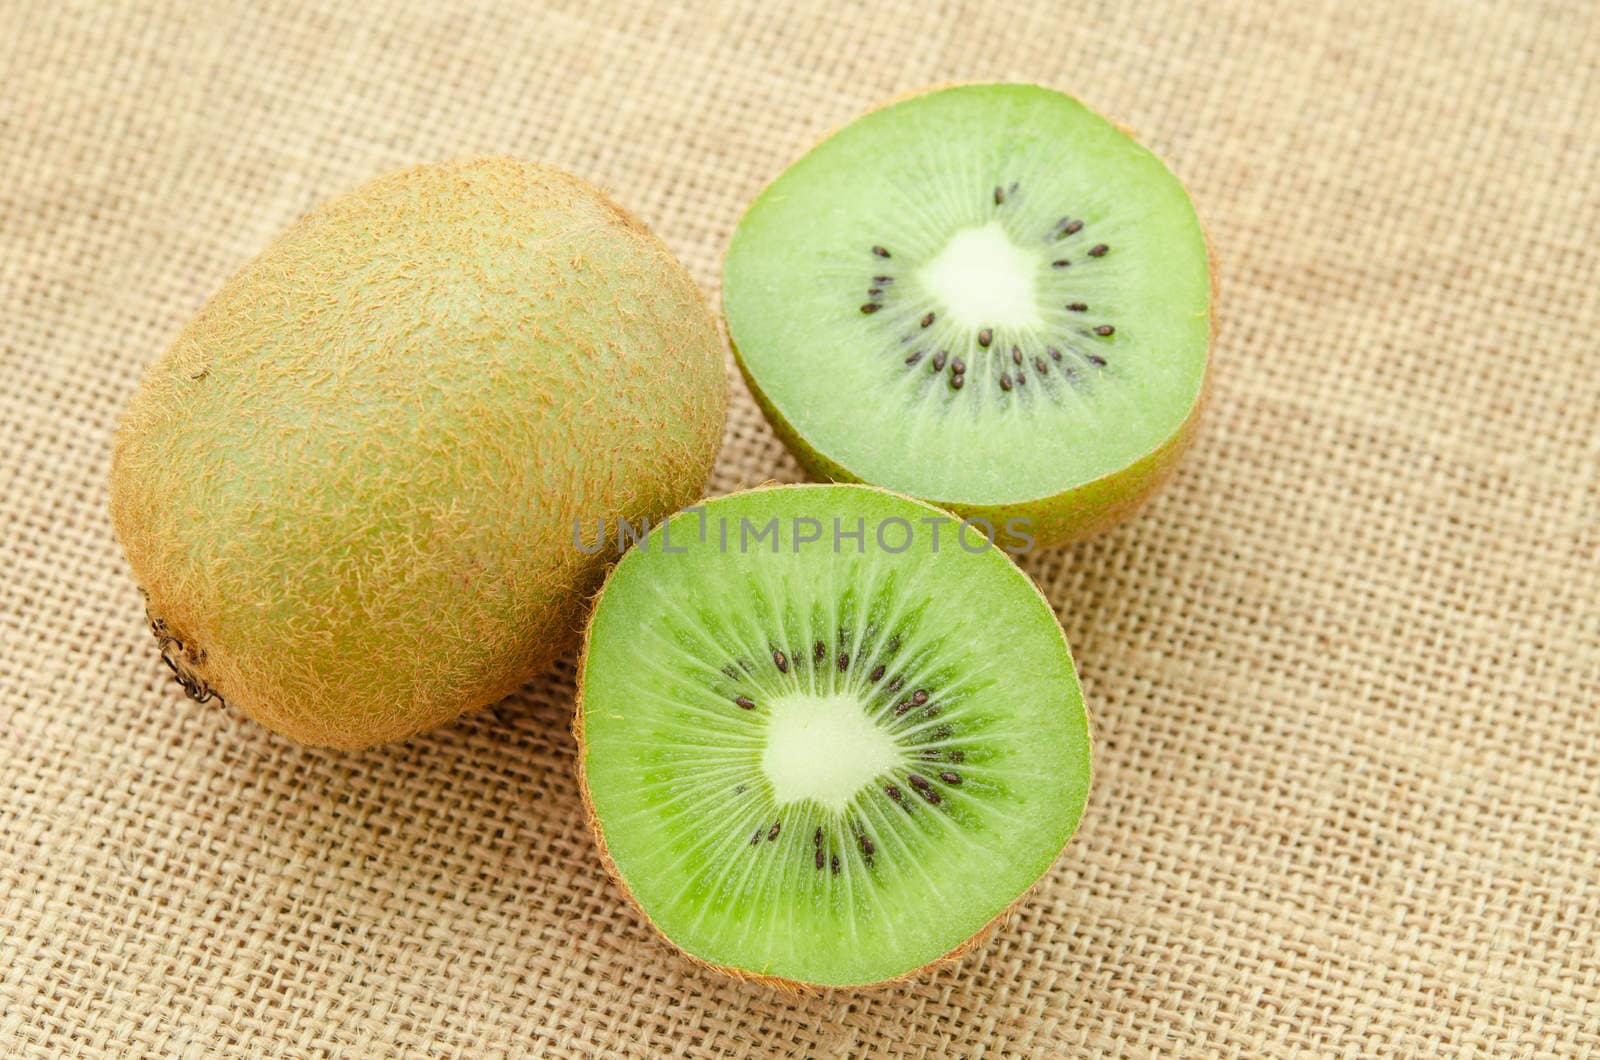 Fresh kiwi fruit and slic fruit put on sack background.